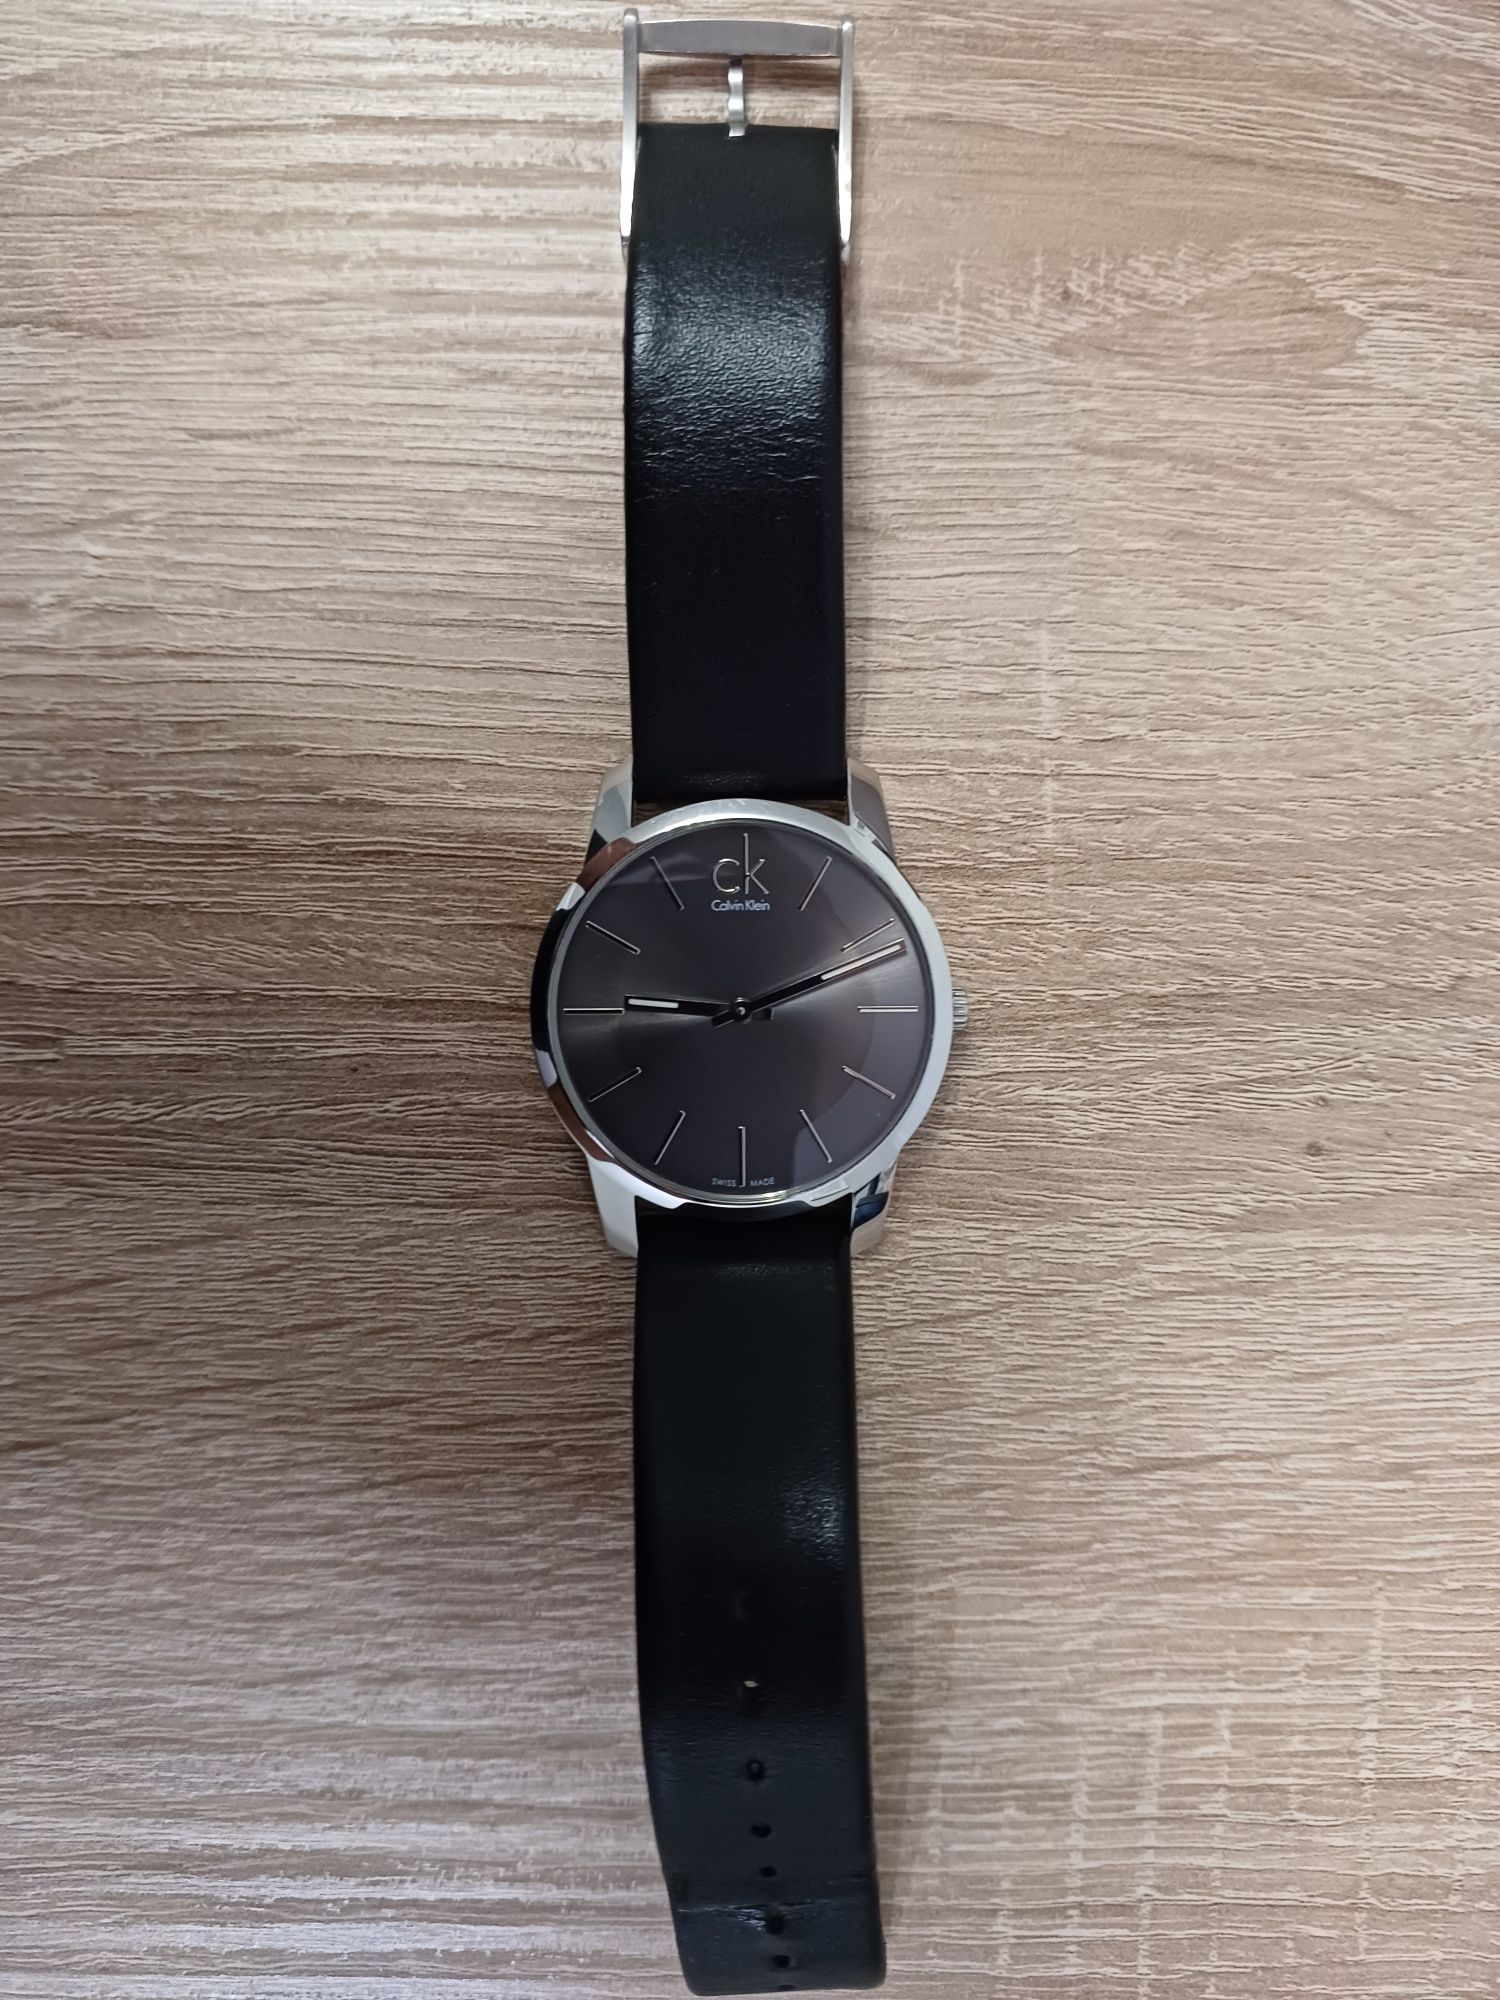 Calvin Klein oryginalny zegarek damski w bardzo dobrym stanie